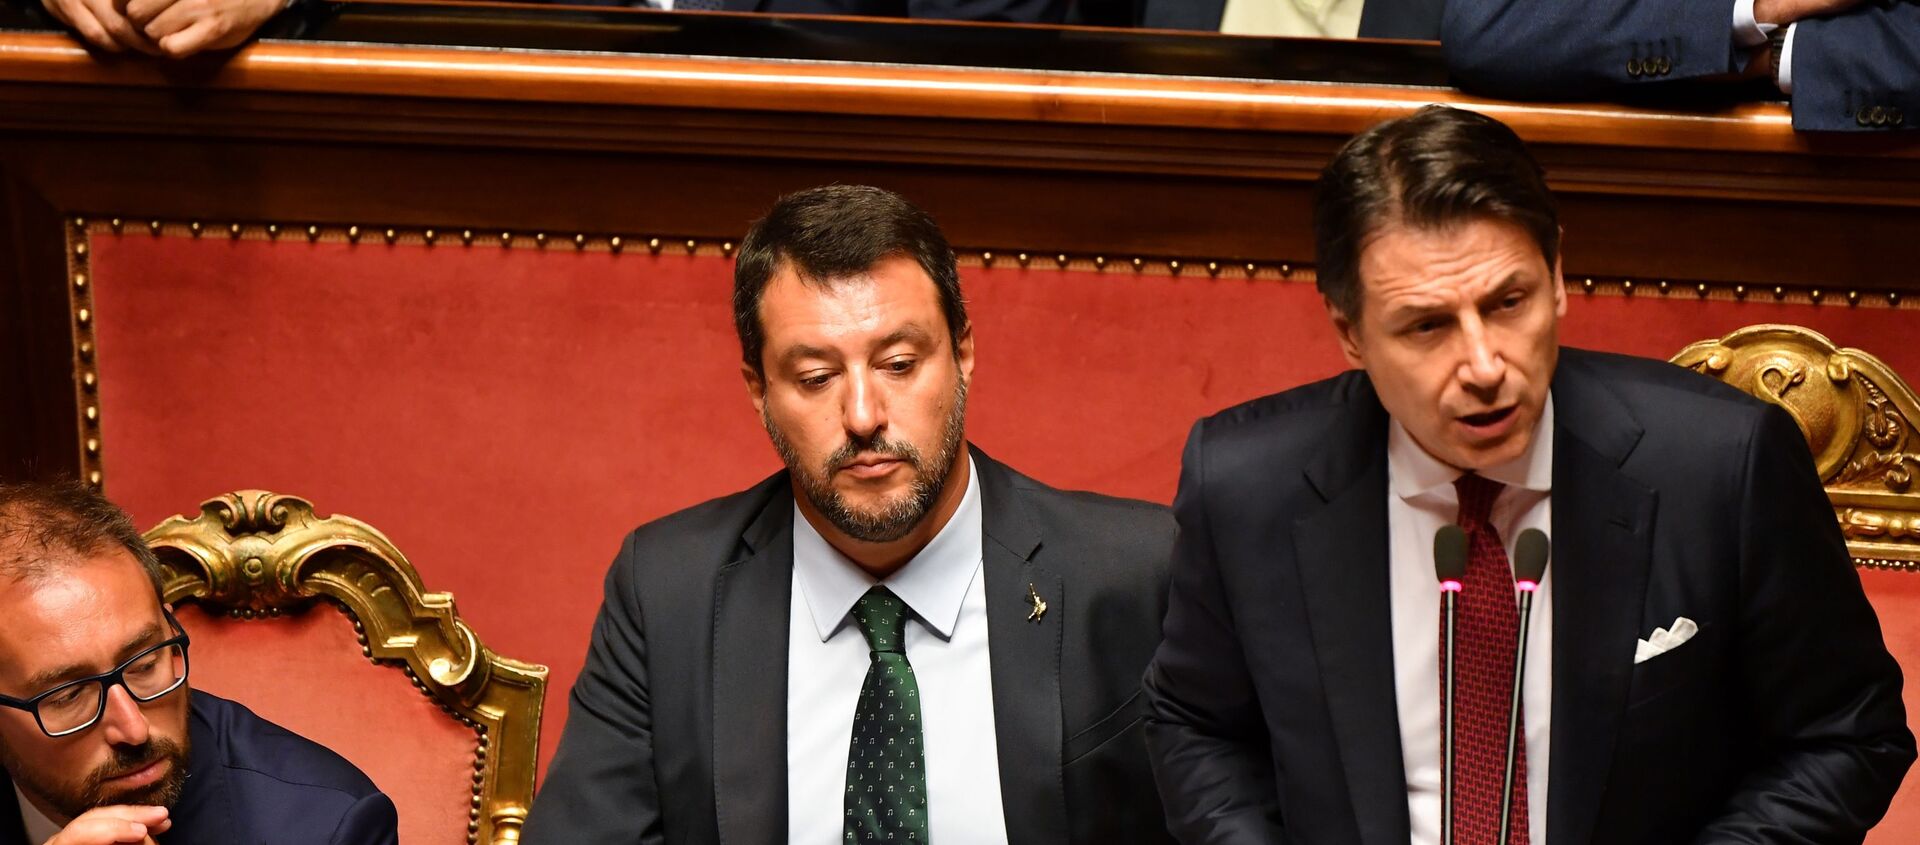 İtalya'da yaşanan hükümet krizinde, Başbakan Giuseppe Conte istifa edeceğini duyurdu. Conte, yardımcısı Matteo Salvini'ye tepki gösterdi. - Sputnik Türkiye, 1920, 28.01.2021